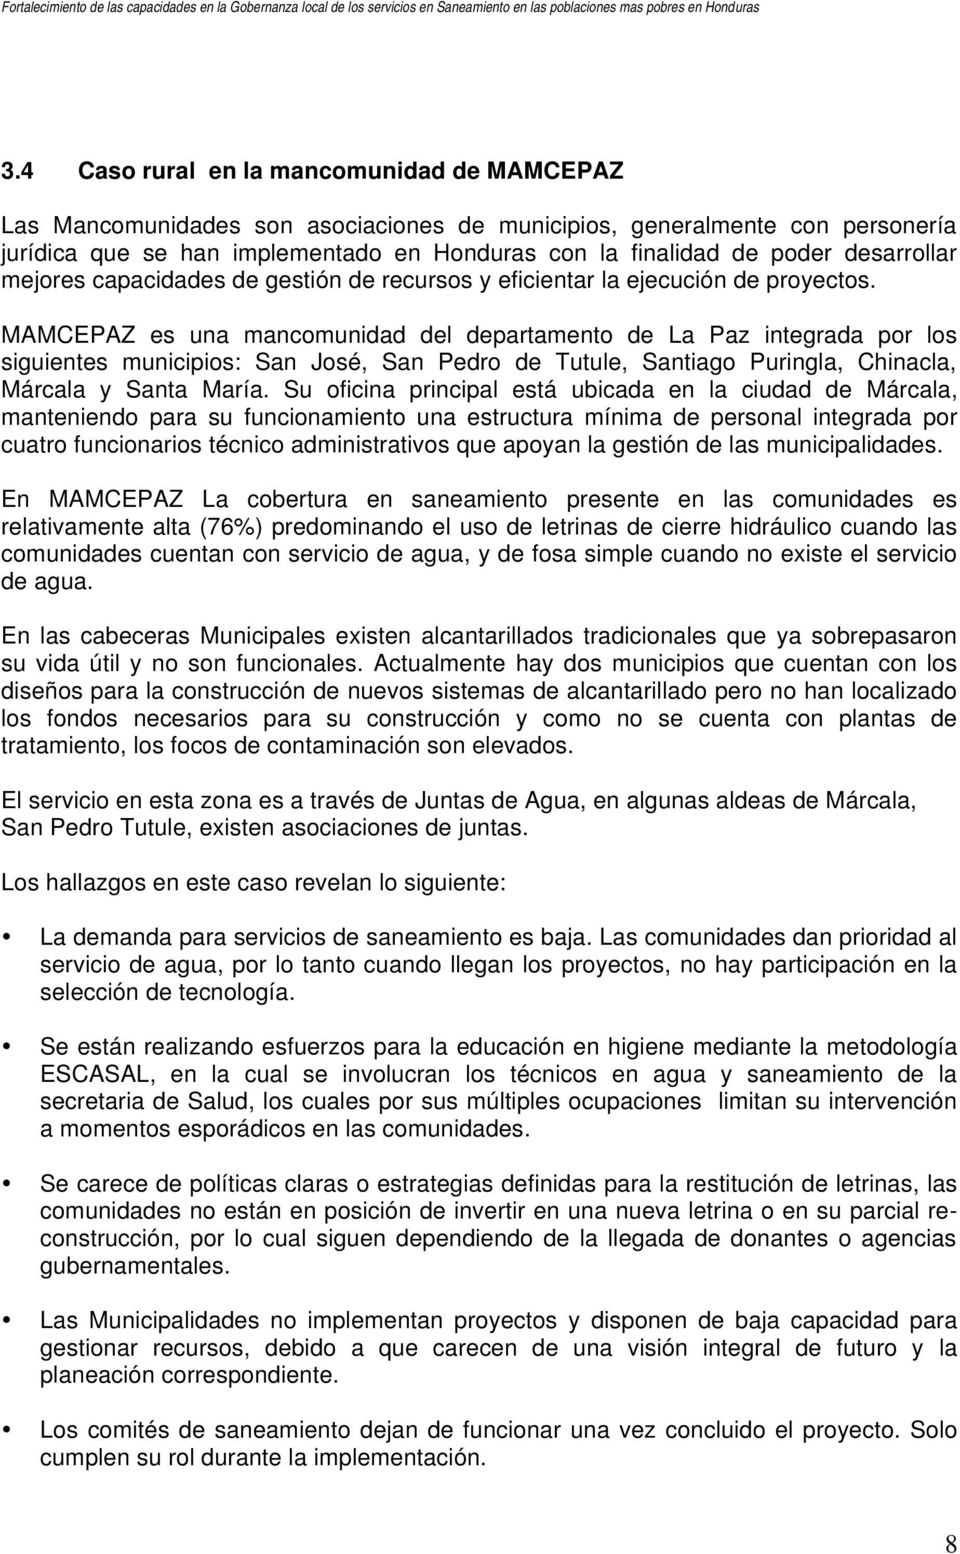 MAMCEPAZ es una mancomunidad del departamento de La Paz integrada por los siguientes municipios: San José, San Pedro de Tutule, Santiago Puringla, Chinacla, Márcala y Santa María.